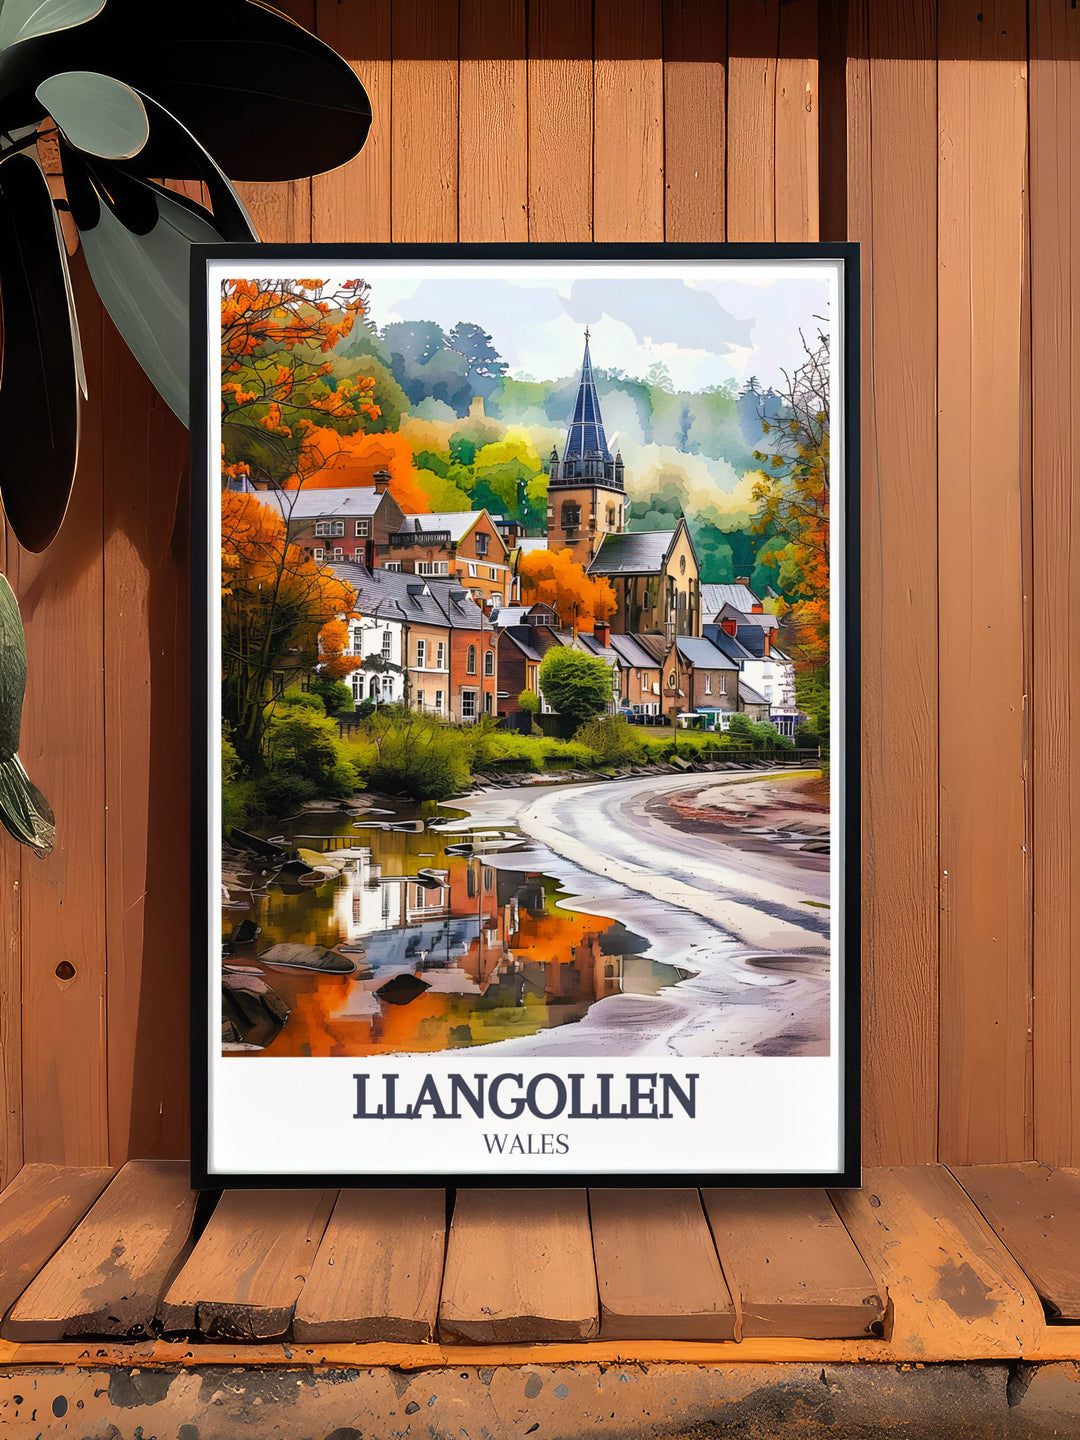 Explore Llangollen through this artwork highlighting River Dee, Llangollen Canal, and Llangollen Methodist Church in vivid detail for home decor.